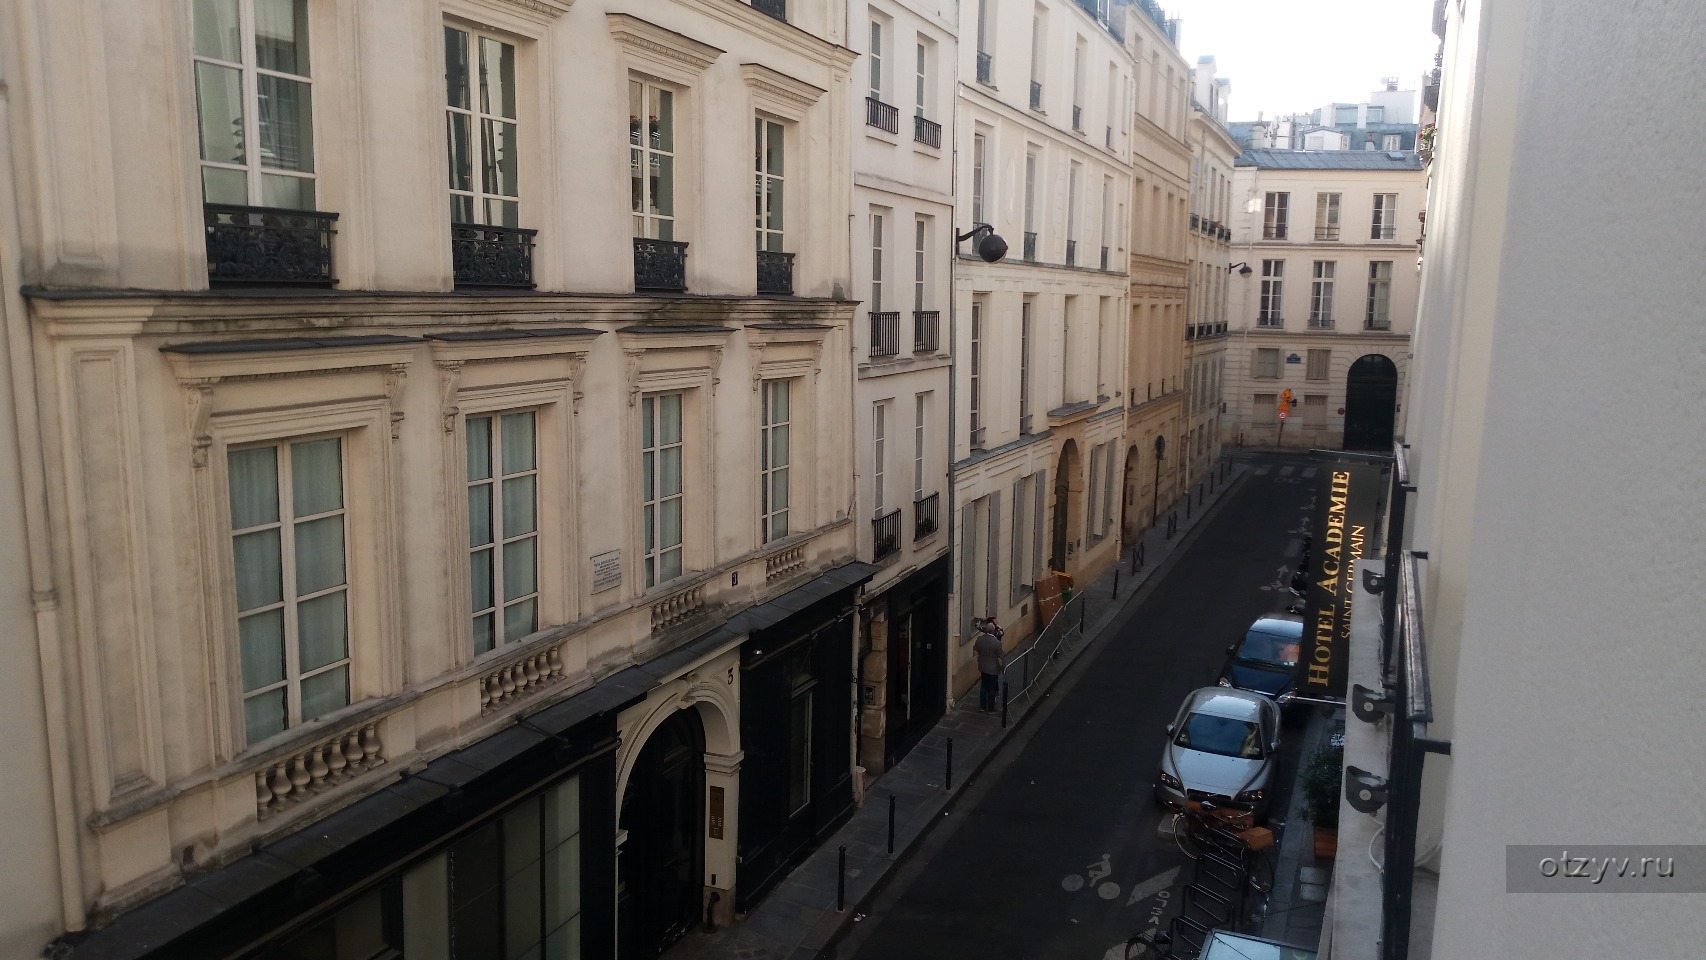 Academie Hotel Saint Germain